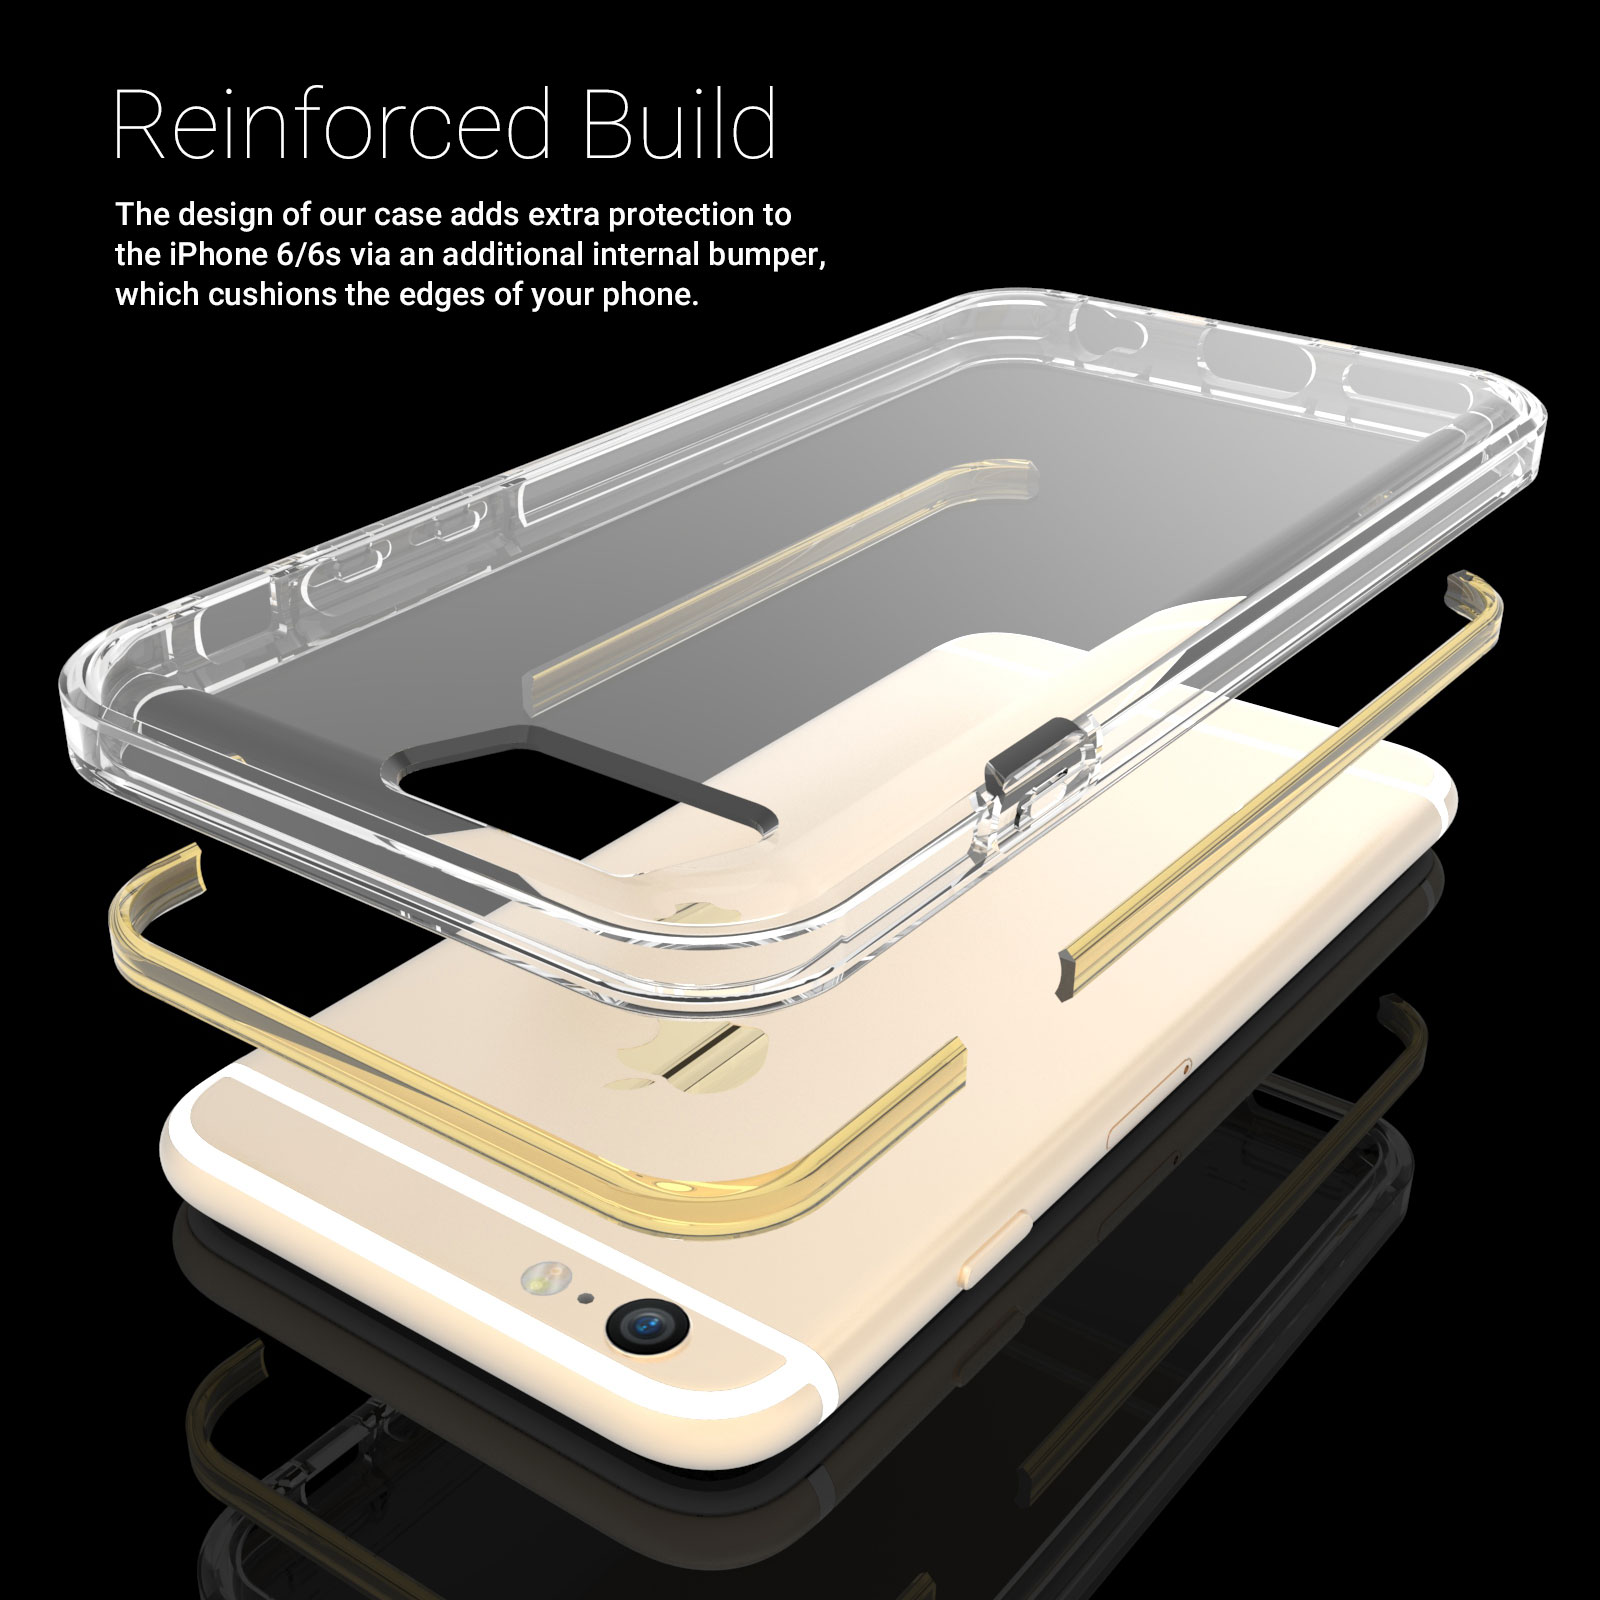 Caseflex iPhone 6 / 6s Reinforced TPU Gel Case - Gold